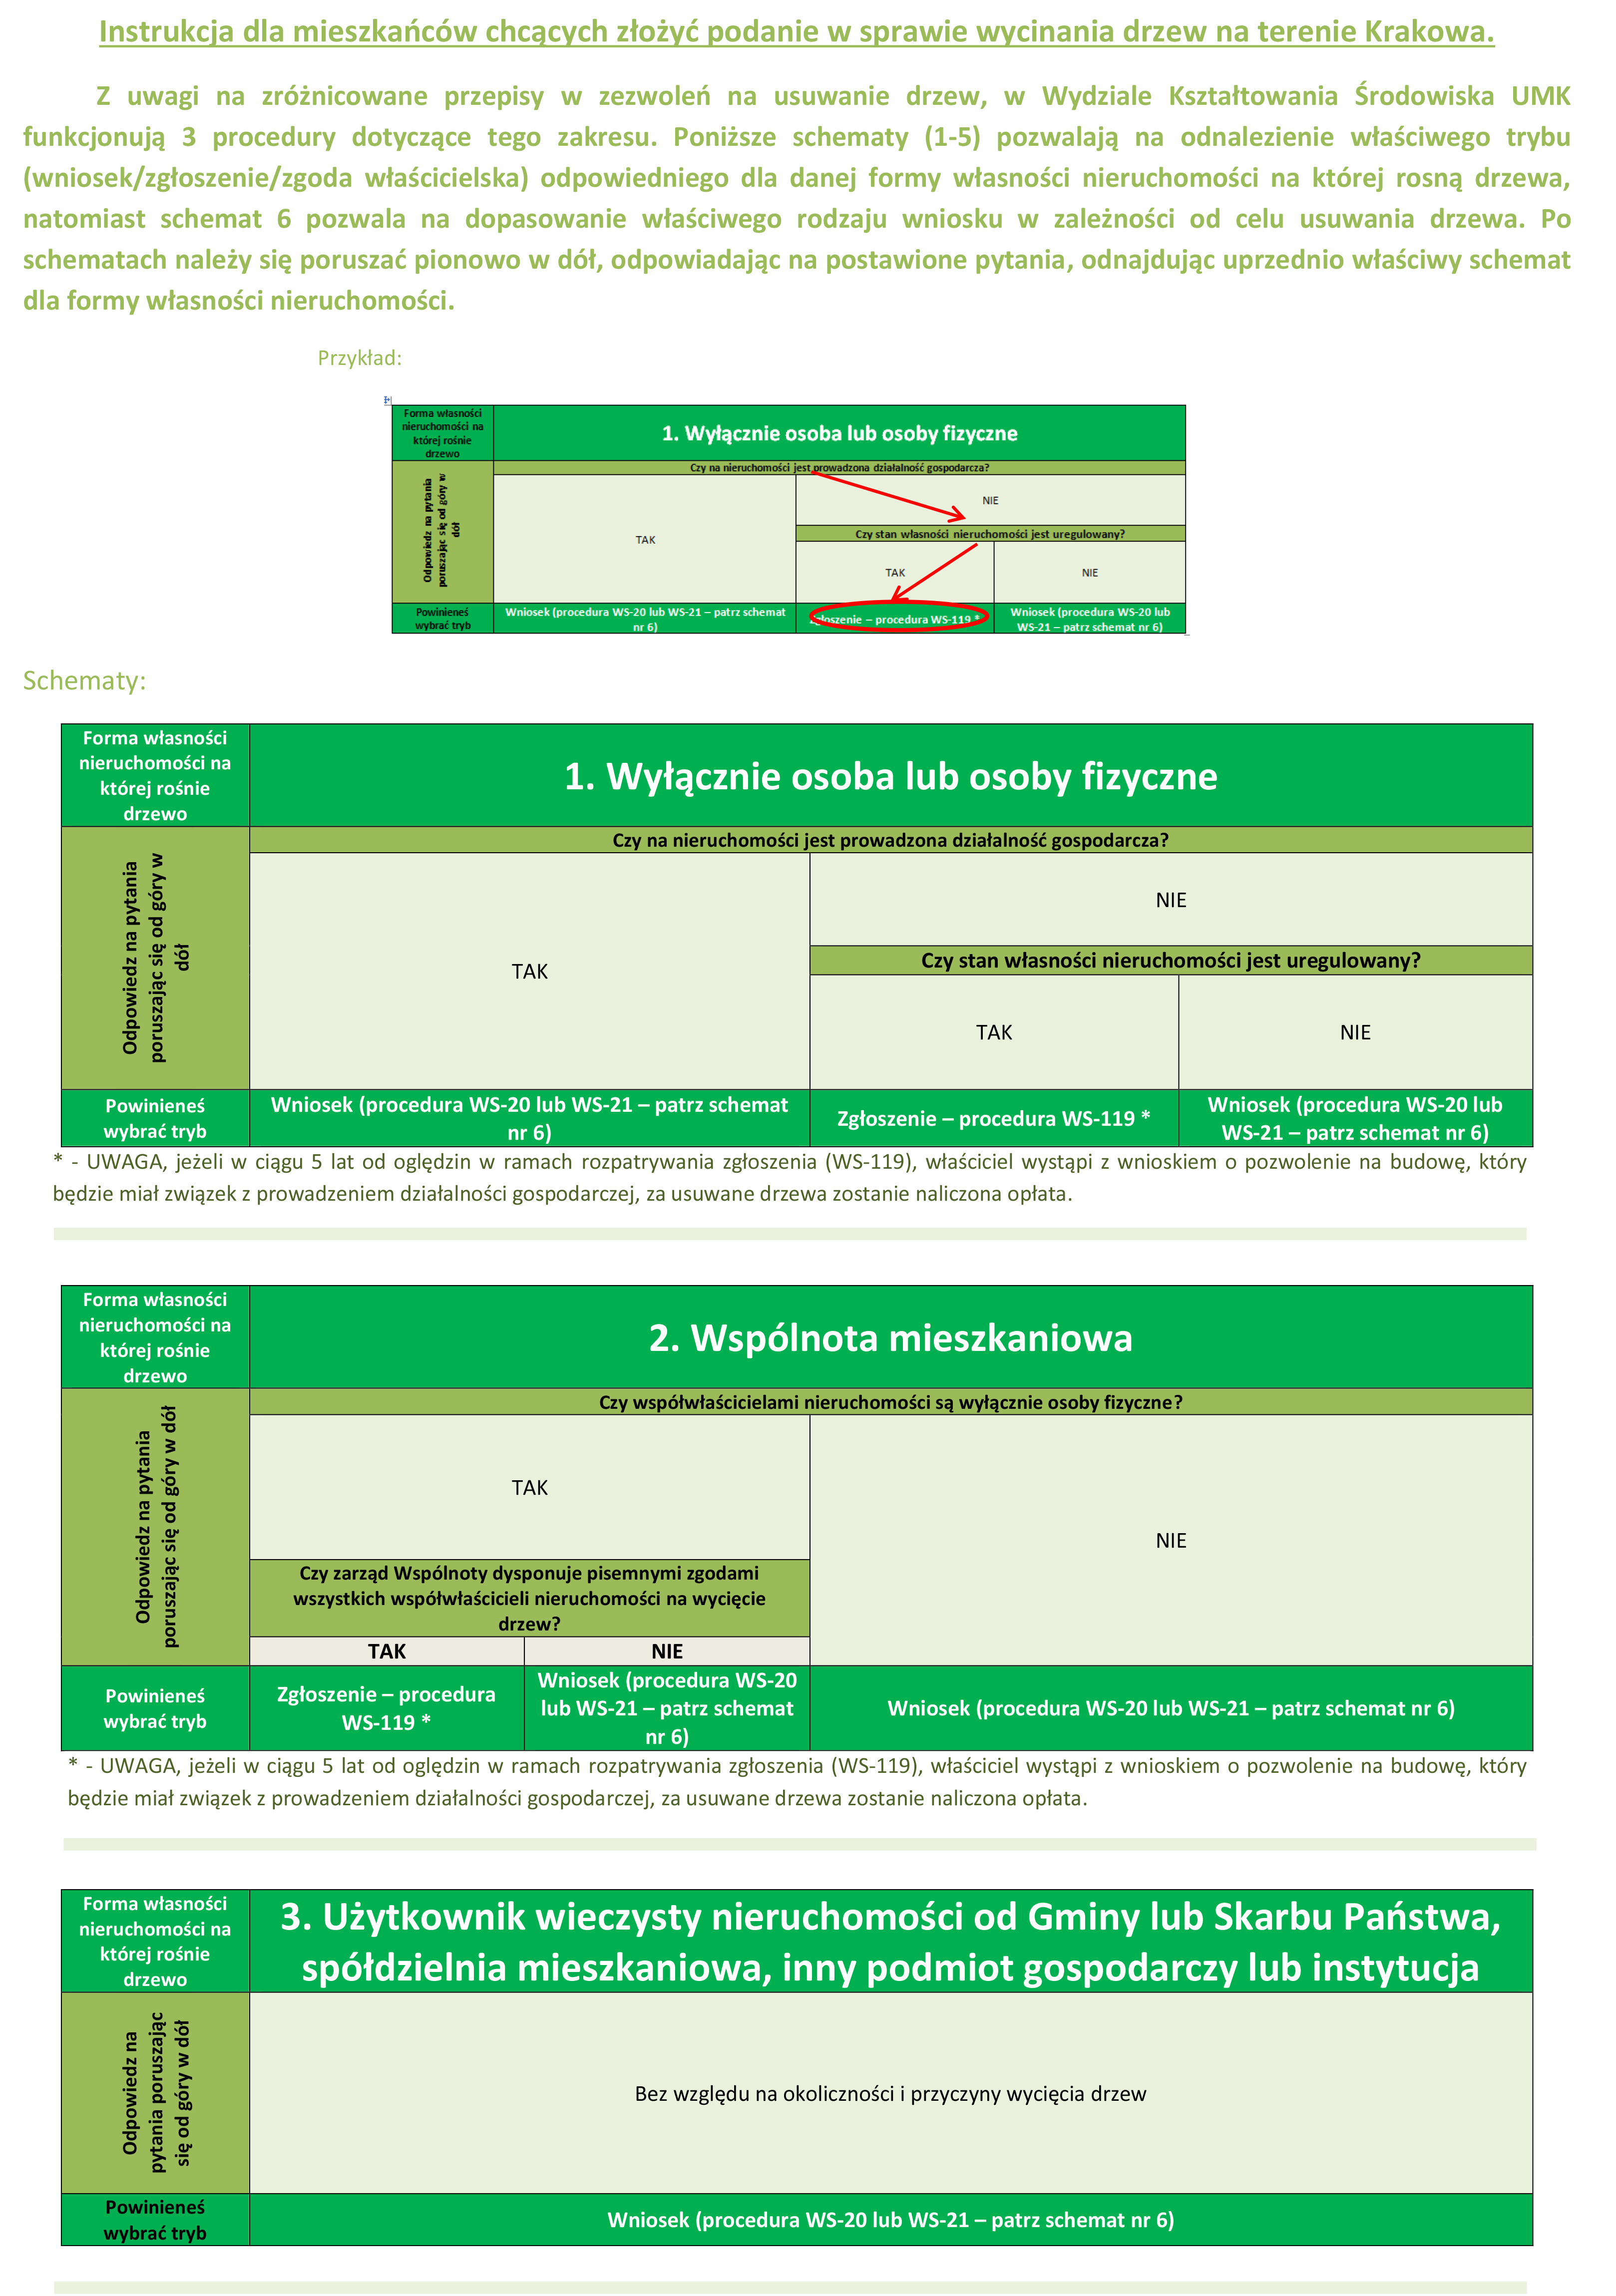 Instrukcja dla mieszkańców chcących złożyć podanie w sprawie wycinania drzew na terenie Krakowa. Z uwagi na zróżnicowane przepisy w zezwoleń na usuwanie drzew, w Wydziale Kształtowania Środowiska UMK funkcjonują 3 procedury dotyczące tego zakresu. Poniższe schematy (1-5) pozwalają na odnalezienie właściwego trybu (wniosek/zgłoszenie/zgoda właścicielska) odpowiedniego dla danej formy własności nieruchomości na której rosną drzewa, natomiast schemat 6 pozwala na dopasowanie właściwego rodzaju wniosku w zależności od celu usuwania drzewa. Po schematach należy się poruszać pionowo w dół, odpowiadając na postawione pytania, odnajdując uprzednio właściwy schemat dla formy własności nieruchomości.